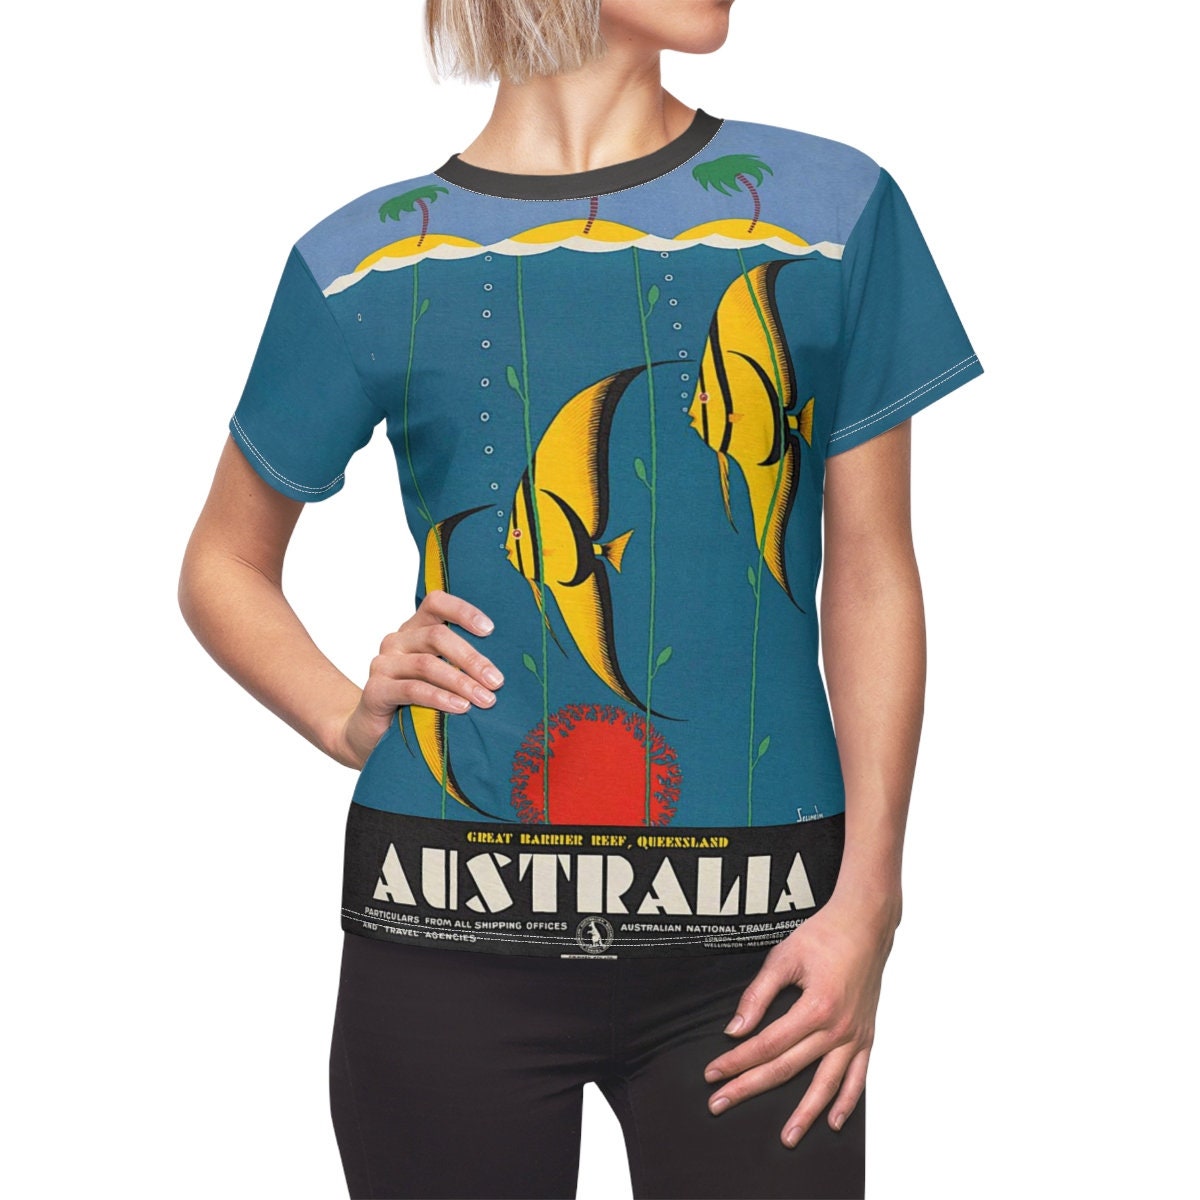 Tee Shirt /Australia /Women /Travel /T-shirt /Tee /Shirt /Vintage /Art /Fish /Birthday Gift /Clothing /Gift for Her - Chloe Lambertin